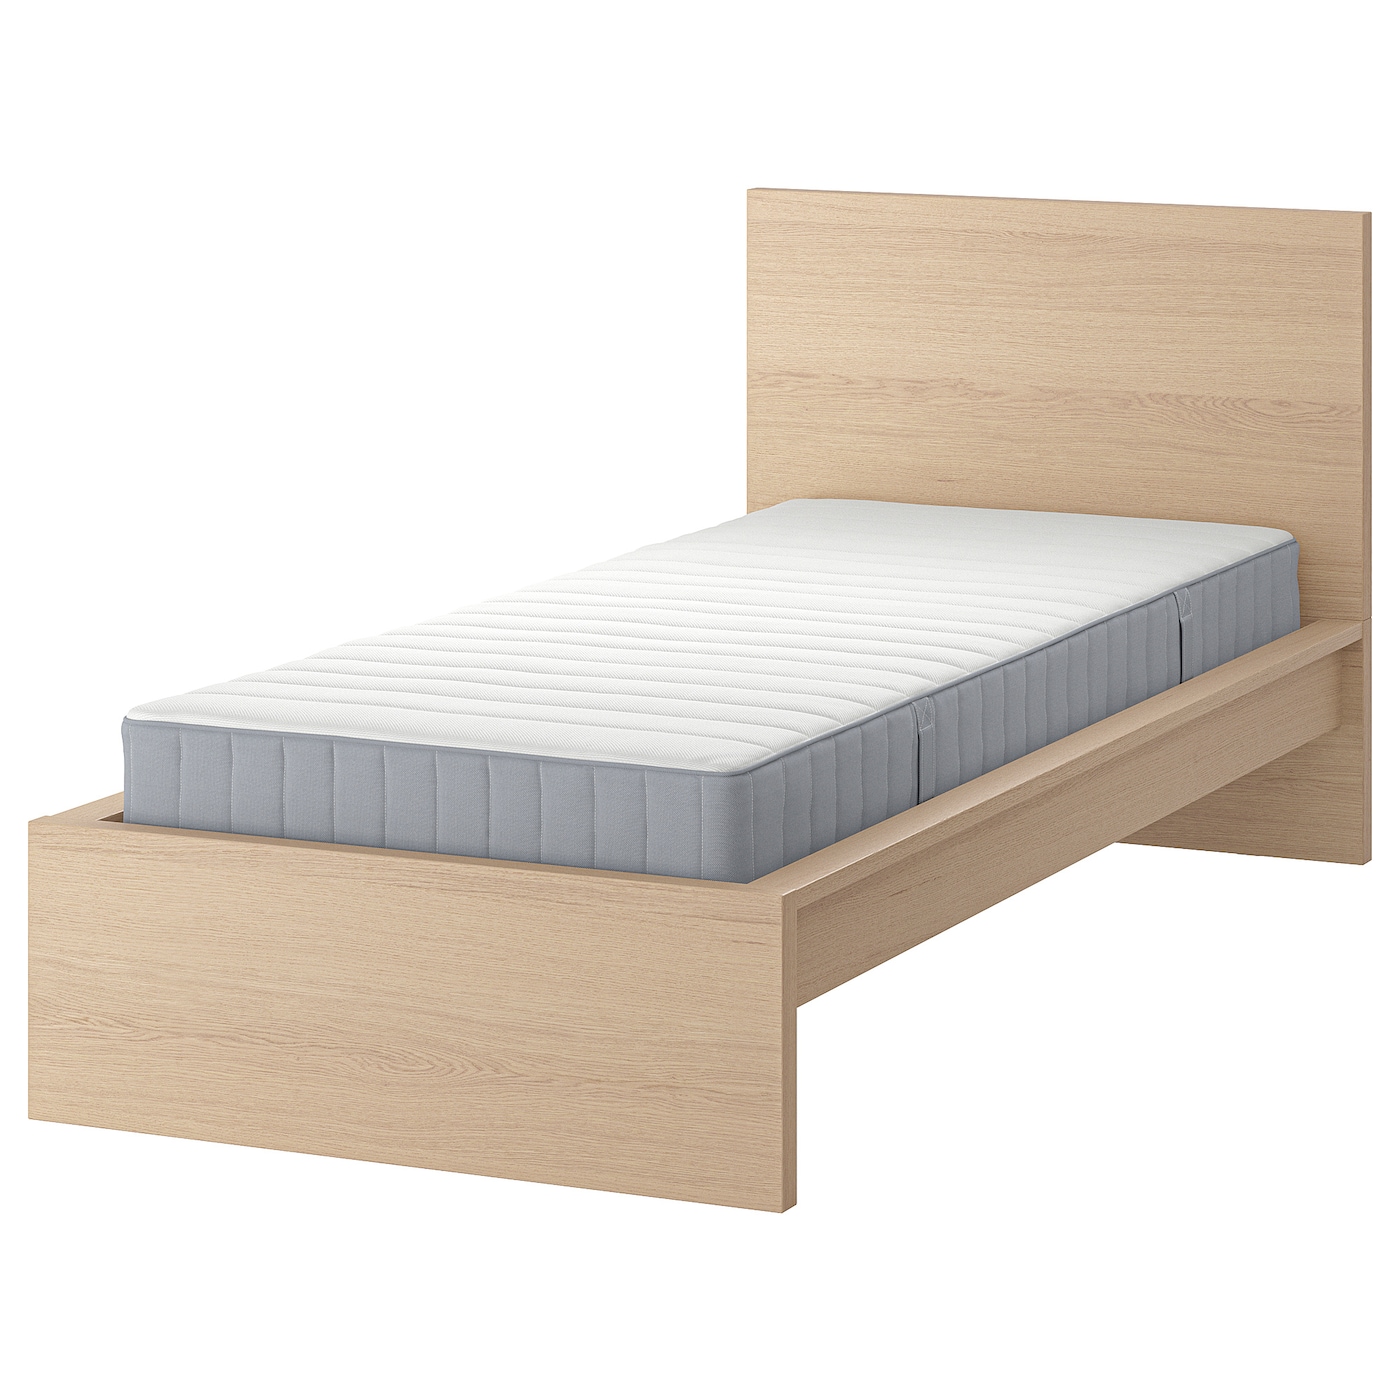 Кровать - IKEA MALM, 200х120 см, матрас средне-жесткий, под беленый дуб, МАЛЬМ ИКЕА